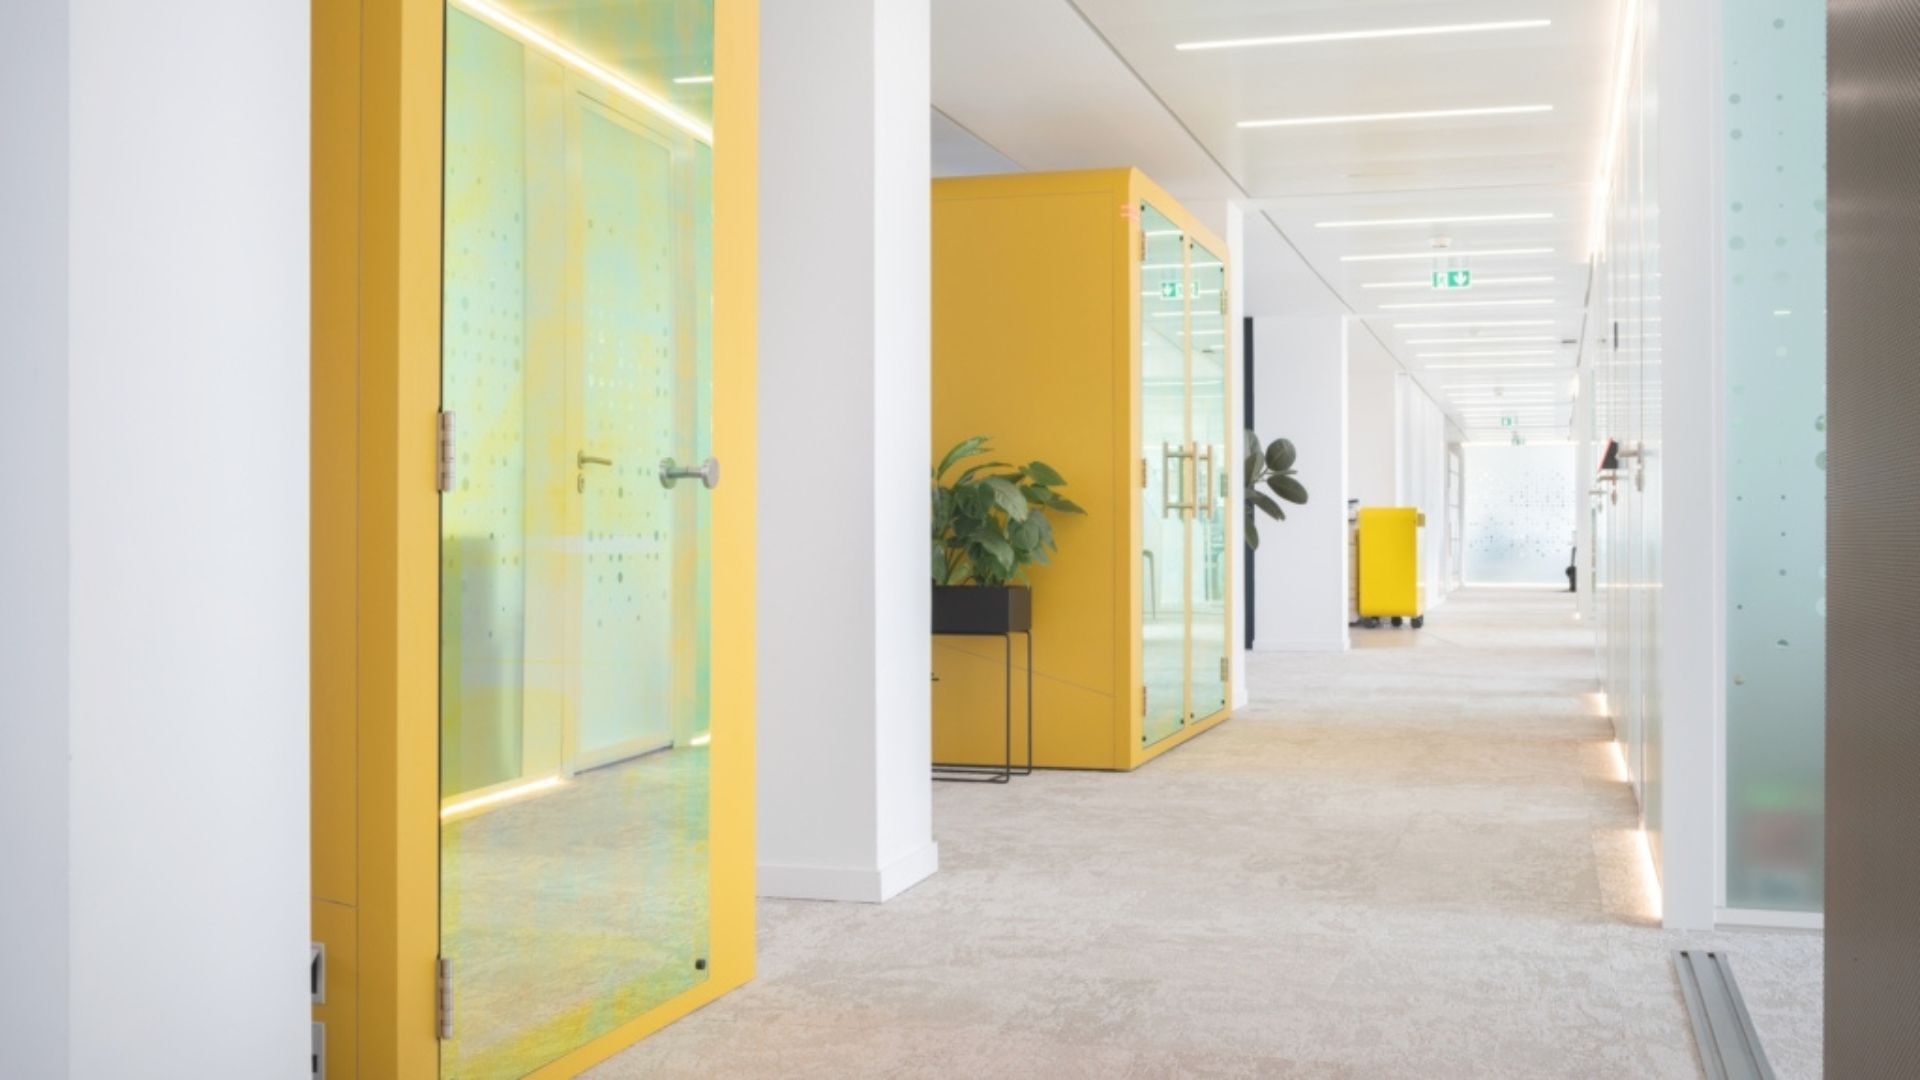 Nội thất trong phòng họp mini màu vàng giúp cho nhân viên cảm thấy thoải mái | Dự án văn phòng Unowhy tại Paris - Nguồn: Office snapshots. 